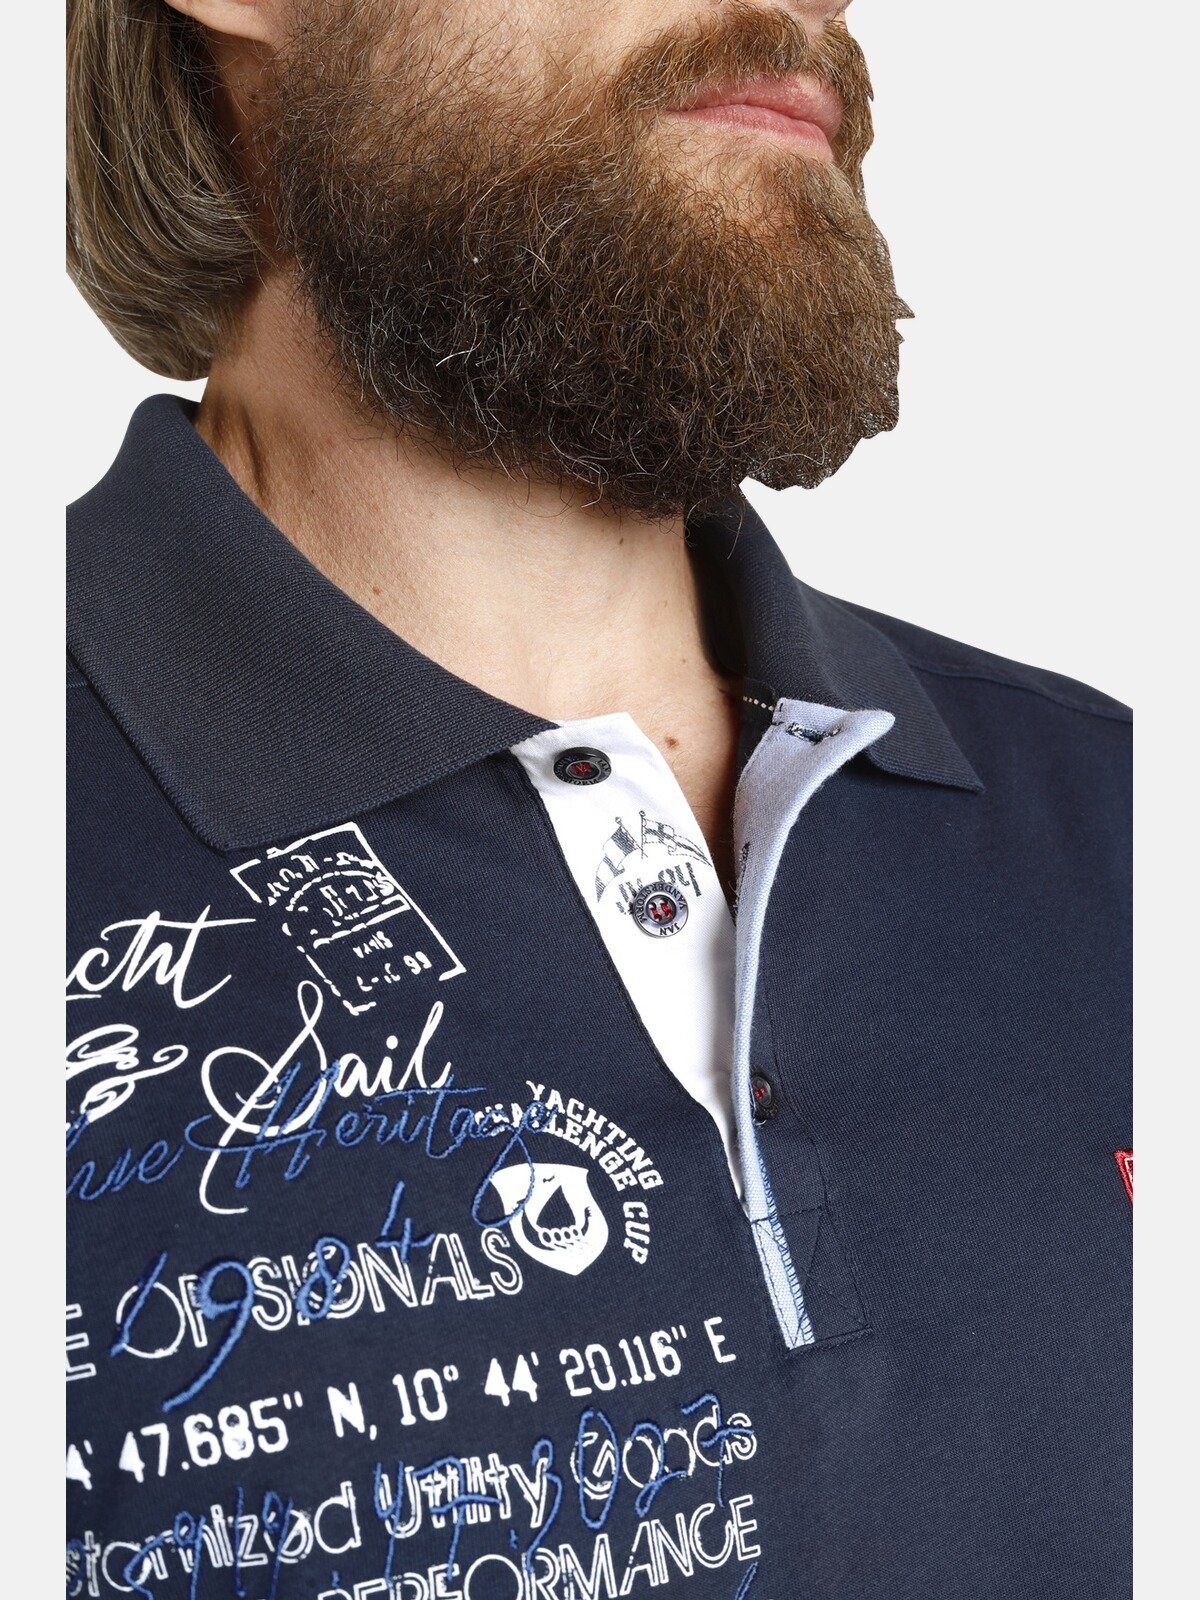 Jan Vanderstorm weicher Jersey-Qualität JANO aus Poloshirt dunkelblau